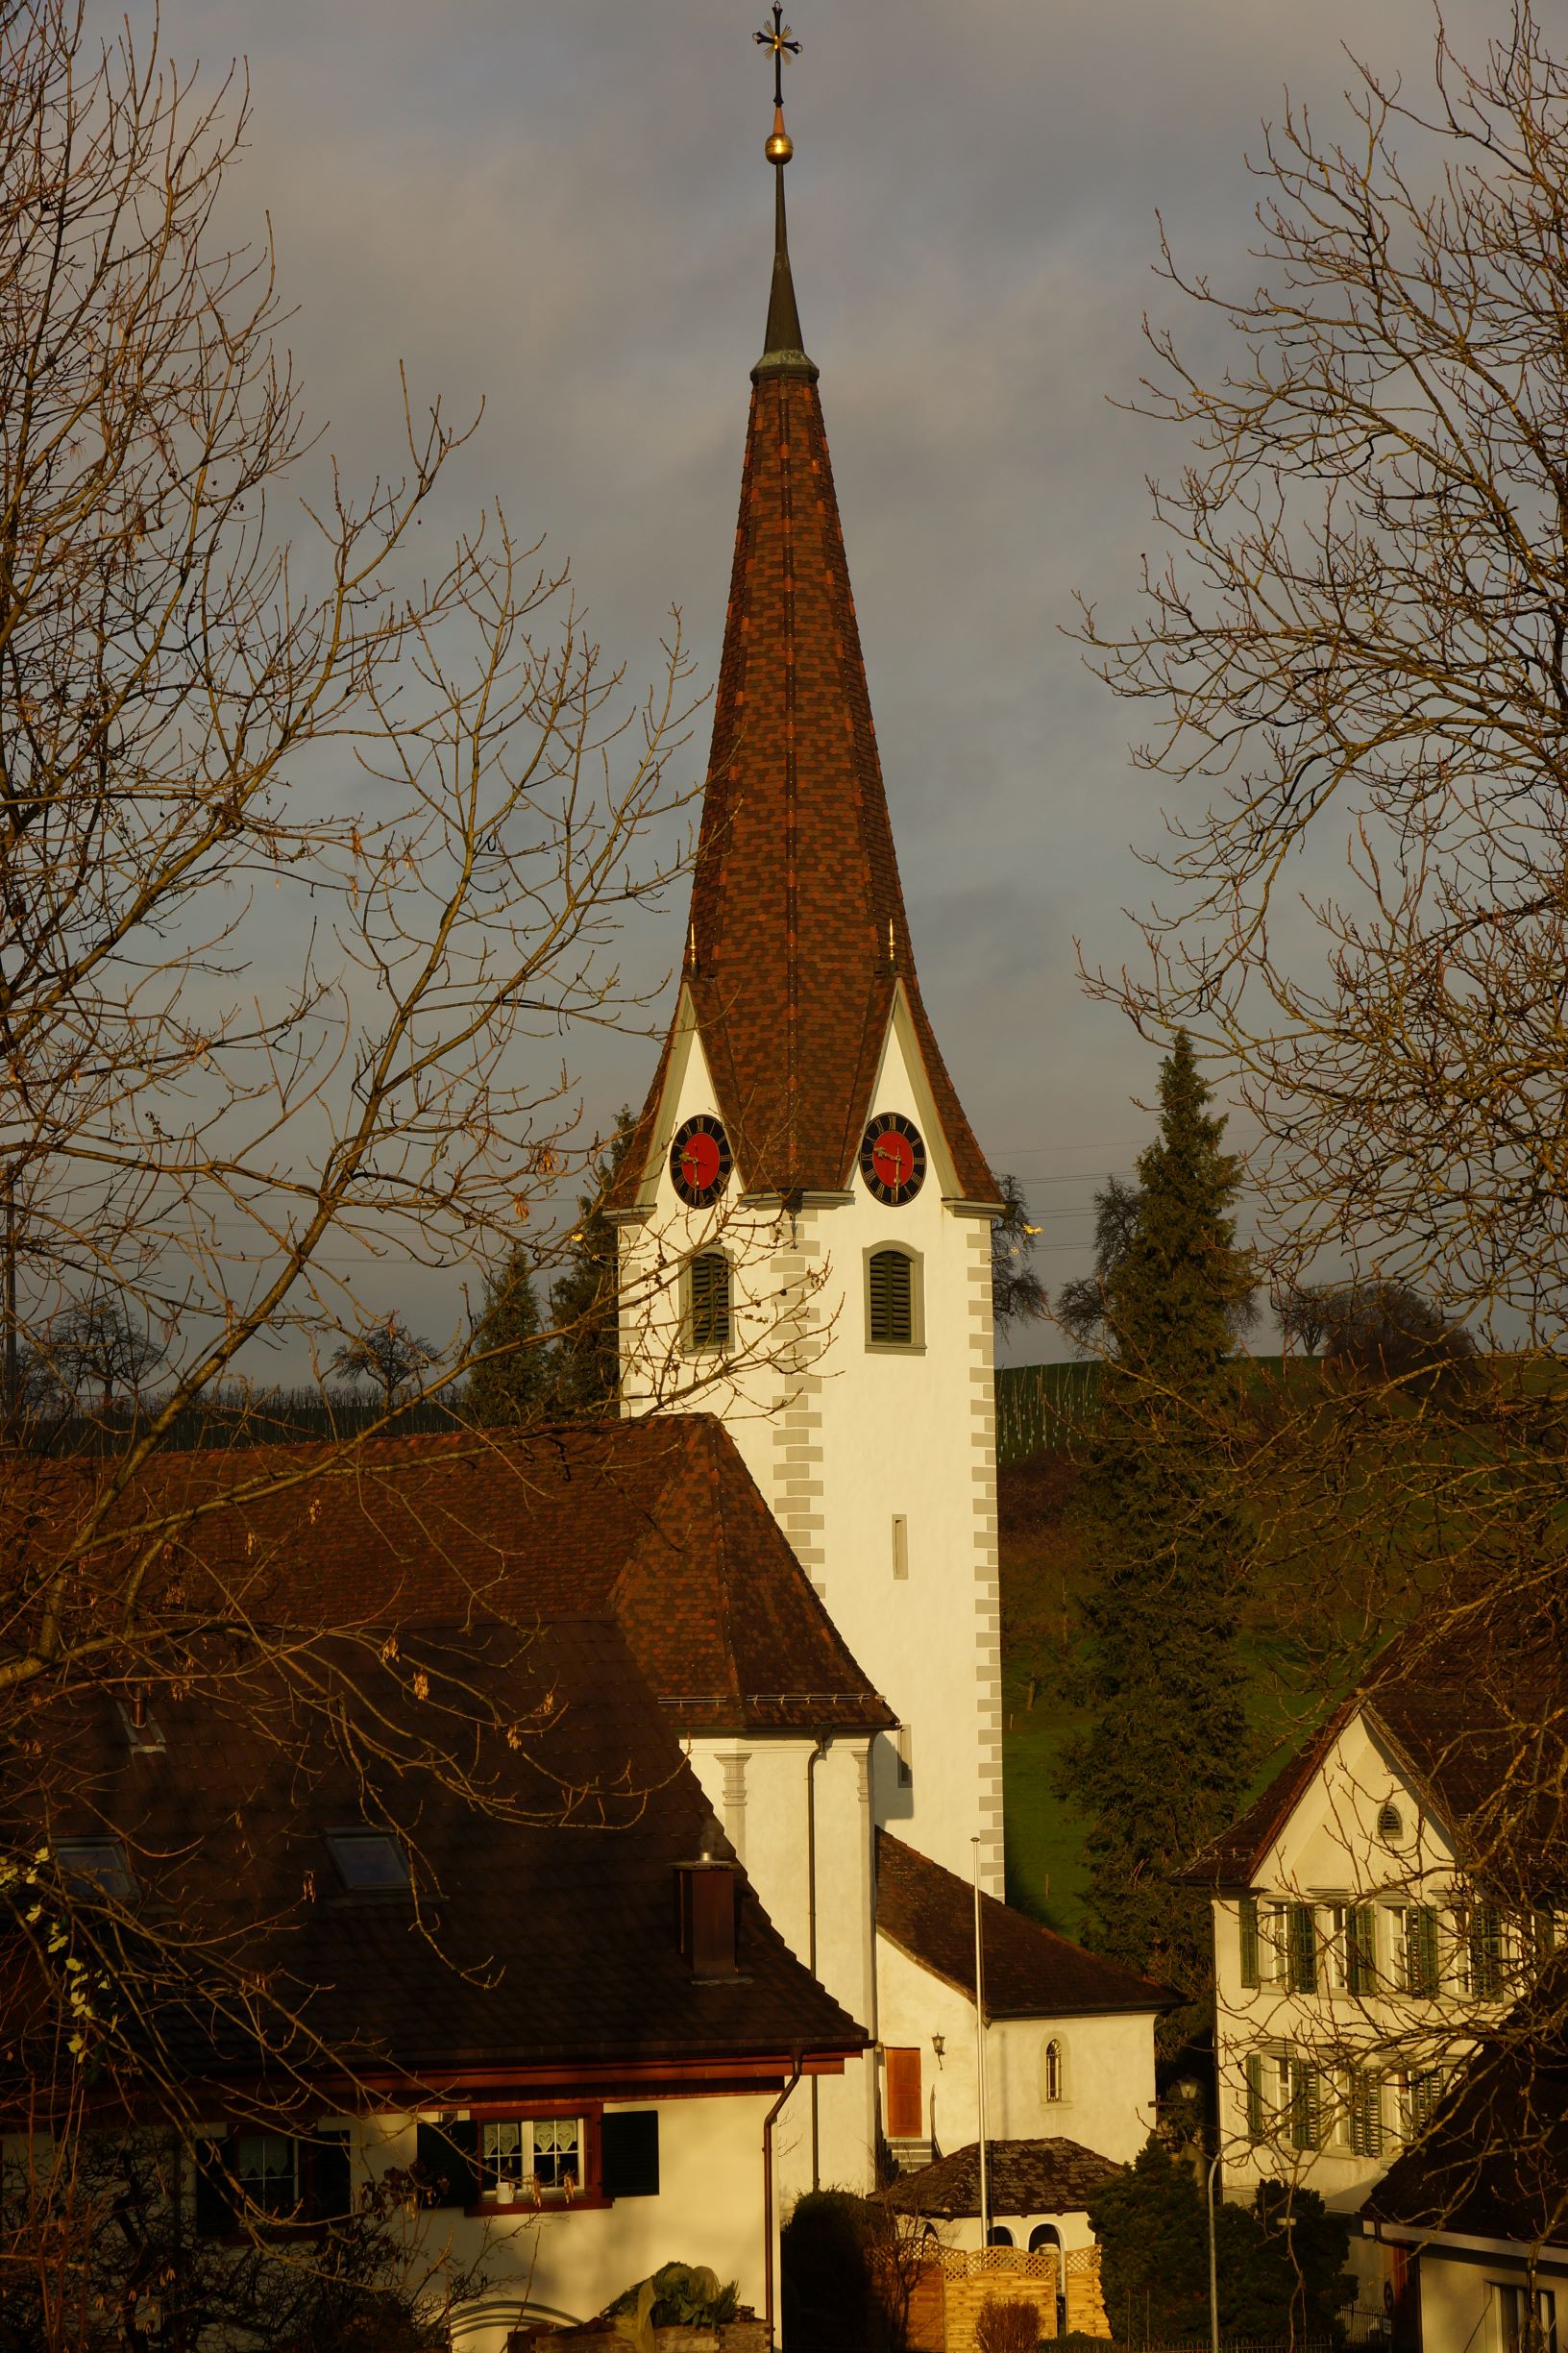 Anblick der Pfarrkirche kurz vor einem Gewitter